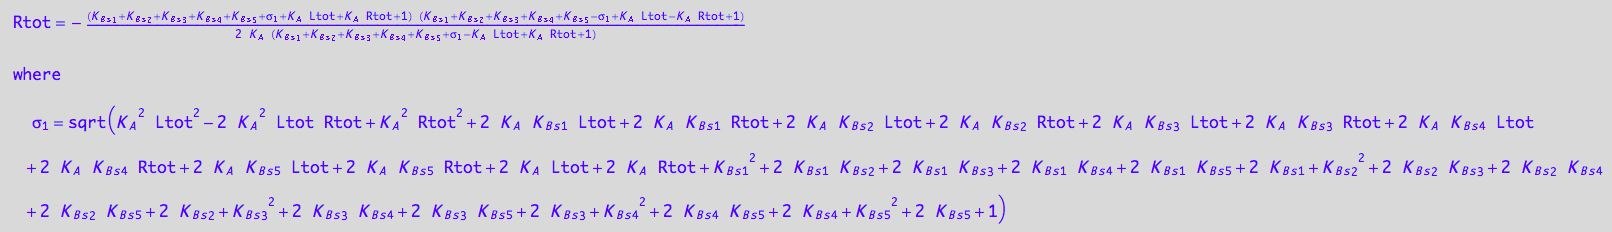 Rtot = -((K_B_s_1 + K_B_s_2 + K_B_s_3 + K_B_s_4 + K_B_s_5 + (K_A^2*Ltot^2 - 2*K_A^2*Ltot*Rtot + K_A^2*Rtot^2 + 2*K_A*K_B_s_1*Ltot + 2*K_A*K_B_s_1*Rtot + 2*K_A*K_B_s_2*Ltot + 2*K_A*K_B_s_2*Rtot + 2*K_A*K_B_s_3*Ltot + 2*K_A*K_B_s_3*Rtot + 2*K_A*K_B_s_4*Ltot + 2*K_A*K_B_s_4*Rtot + 2*K_A*K_B_s_5*Ltot + 2*K_A*K_B_s_5*Rtot + 2*K_A*Ltot + 2*K_A*Rtot + K_B_s_1^2 + 2*K_B_s_1*K_B_s_2 + 2*K_B_s_1*K_B_s_3 + 2*K_B_s_1*K_B_s_4 + 2*K_B_s_1*K_B_s_5 + 2*K_B_s_1 + K_B_s_2^2 + 2*K_B_s_2*K_B_s_3 + 2*K_B_s_2*K_B_s_4 + 2*K_B_s_2*K_B_s_5 + 2*K_B_s_2 + K_B_s_3^2 + 2*K_B_s_3*K_B_s_4 + 2*K_B_s_3*K_B_s_5 + 2*K_B_s_3 + K_B_s_4^2 + 2*K_B_s_4*K_B_s_5 + 2*K_B_s_4 + K_B_s_5^2 + 2*K_B_s_5 + 1)^(1/2) + K_A*Ltot + K_A*Rtot + 1)*(K_B_s_1 + K_B_s_2 + K_B_s_3 + K_B_s_4 + K_B_s_5 - (K_A^2*Ltot^2 - 2*K_A^2*Ltot*Rtot + K_A^2*Rtot^2 + 2*K_A*K_B_s_1*Ltot + 2*K_A*K_B_s_1*Rtot + 2*K_A*K_B_s_2*Ltot + 2*K_A*K_B_s_2*Rtot + 2*K_A*K_B_s_3*Ltot + 2*K_A*K_B_s_3*Rtot + 2*K_A*K_B_s_4*Ltot + 2*K_A*K_B_s_4*Rtot + 2*K_A*K_B_s_5*Ltot + 2*K_A*K_B_s_5*Rtot + 2*K_A*Ltot + 2*K_A*Rtot + K_B_s_1^2 + 2*K_B_s_1*K_B_s_2 + 2*K_B_s_1*K_B_s_3 + 2*K_B_s_1*K_B_s_4 + 2*K_B_s_1*K_B_s_5 + 2*K_B_s_1 + K_B_s_2^2 + 2*K_B_s_2*K_B_s_3 + 2*K_B_s_2*K_B_s_4 + 2*K_B_s_2*K_B_s_5 + 2*K_B_s_2 + K_B_s_3^2 + 2*K_B_s_3*K_B_s_4 + 2*K_B_s_3*K_B_s_5 + 2*K_B_s_3 + K_B_s_4^2 + 2*K_B_s_4*K_B_s_5 + 2*K_B_s_4 + K_B_s_5^2 + 2*K_B_s_5 + 1)^(1/2) + K_A*Ltot - K_A*Rtot + 1))/(2*K_A*(K_B_s_1 + K_B_s_2 + K_B_s_3 + K_B_s_4 + K_B_s_5 + (K_A^2*Ltot^2 - 2*K_A^2*Ltot*Rtot + K_A^2*Rtot^2 + 2*K_A*K_B_s_1*Ltot + 2*K_A*K_B_s_1*Rtot + 2*K_A*K_B_s_2*Ltot + 2*K_A*K_B_s_2*Rtot + 2*K_A*K_B_s_3*Ltot + 2*K_A*K_B_s_3*Rtot + 2*K_A*K_B_s_4*Ltot + 2*K_A*K_B_s_4*Rtot + 2*K_A*K_B_s_5*Ltot + 2*K_A*K_B_s_5*Rtot + 2*K_A*Ltot + 2*K_A*Rtot + K_B_s_1^2 + 2*K_B_s_1*K_B_s_2 + 2*K_B_s_1*K_B_s_3 + 2*K_B_s_1*K_B_s_4 + 2*K_B_s_1*K_B_s_5 + 2*K_B_s_1 + K_B_s_2^2 + 2*K_B_s_2*K_B_s_3 + 2*K_B_s_2*K_B_s_4 + 2*K_B_s_2*K_B_s_5 + 2*K_B_s_2 + K_B_s_3^2 + 2*K_B_s_3*K_B_s_4 + 2*K_B_s_3*K_B_s_5 + 2*K_B_s_3 + K_B_s_4^2 + 2*K_B_s_4*K_B_s_5 + 2*K_B_s_4 + K_B_s_5^2 + 2*K_B_s_5 + 1)^(1/2) - K_A*Ltot + K_A*Rtot + 1))